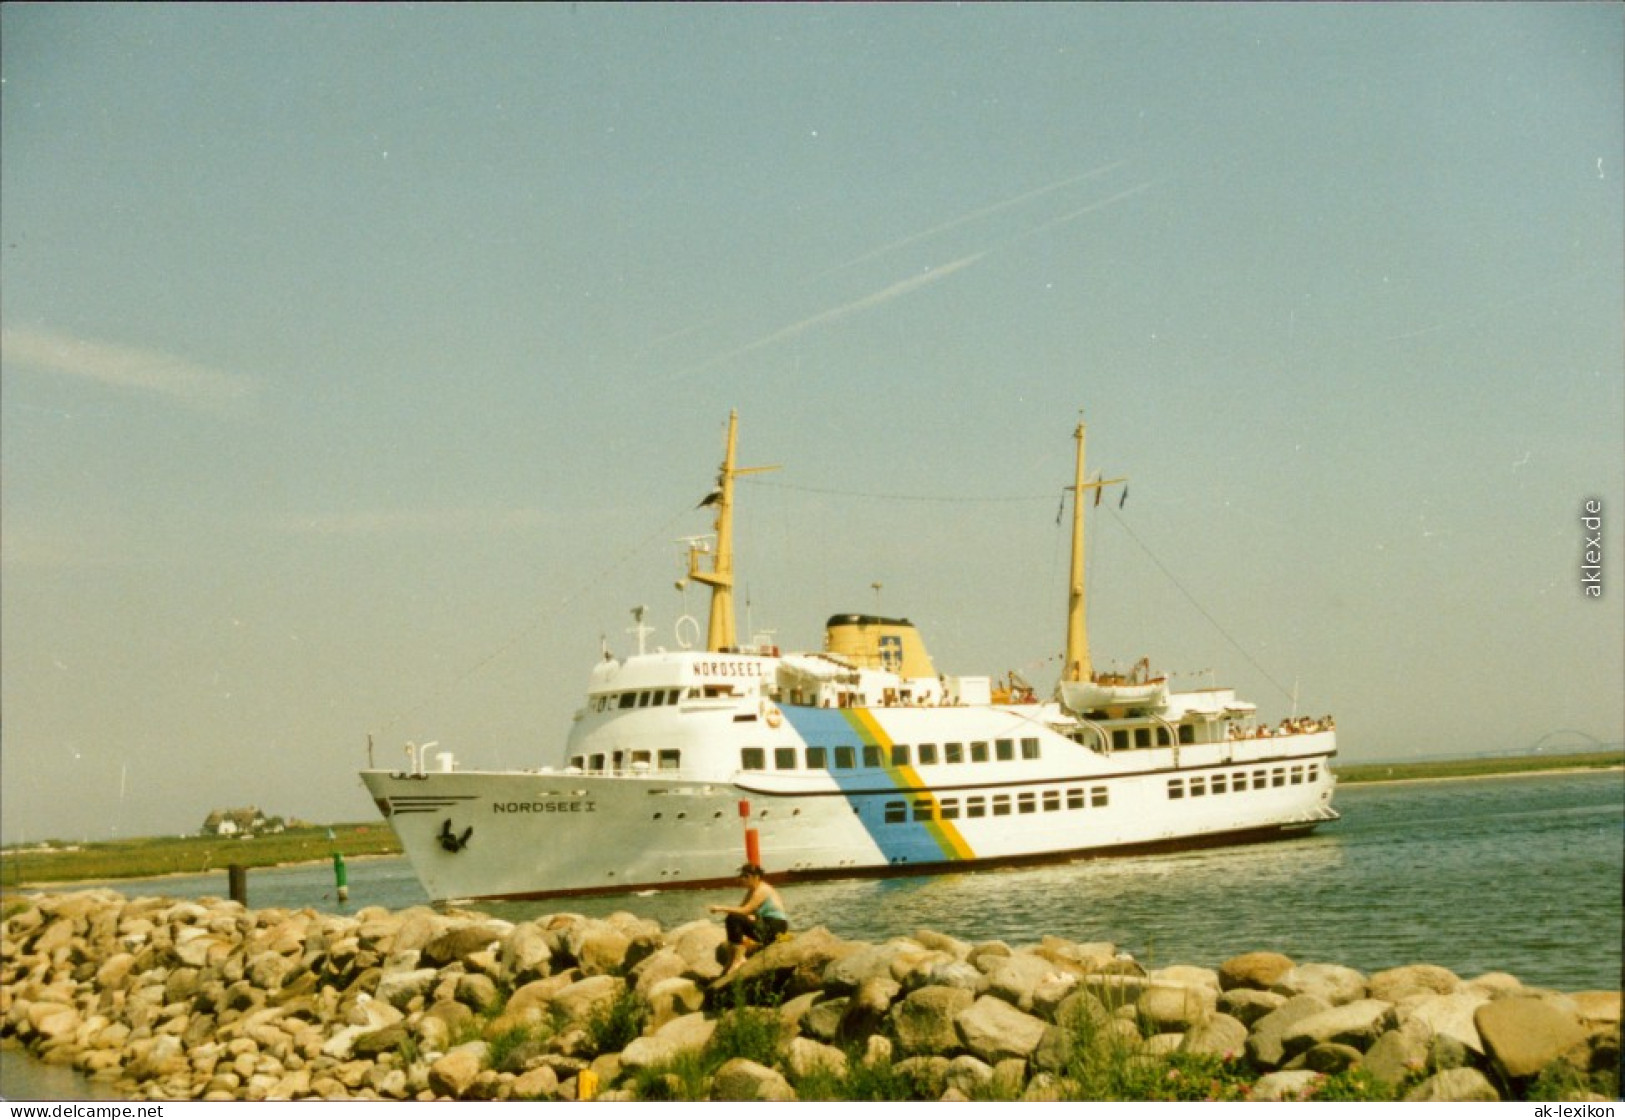 Ansichtskarte  Fährschiff "Nordsee I" 1999 Privatfoto  - Fähren